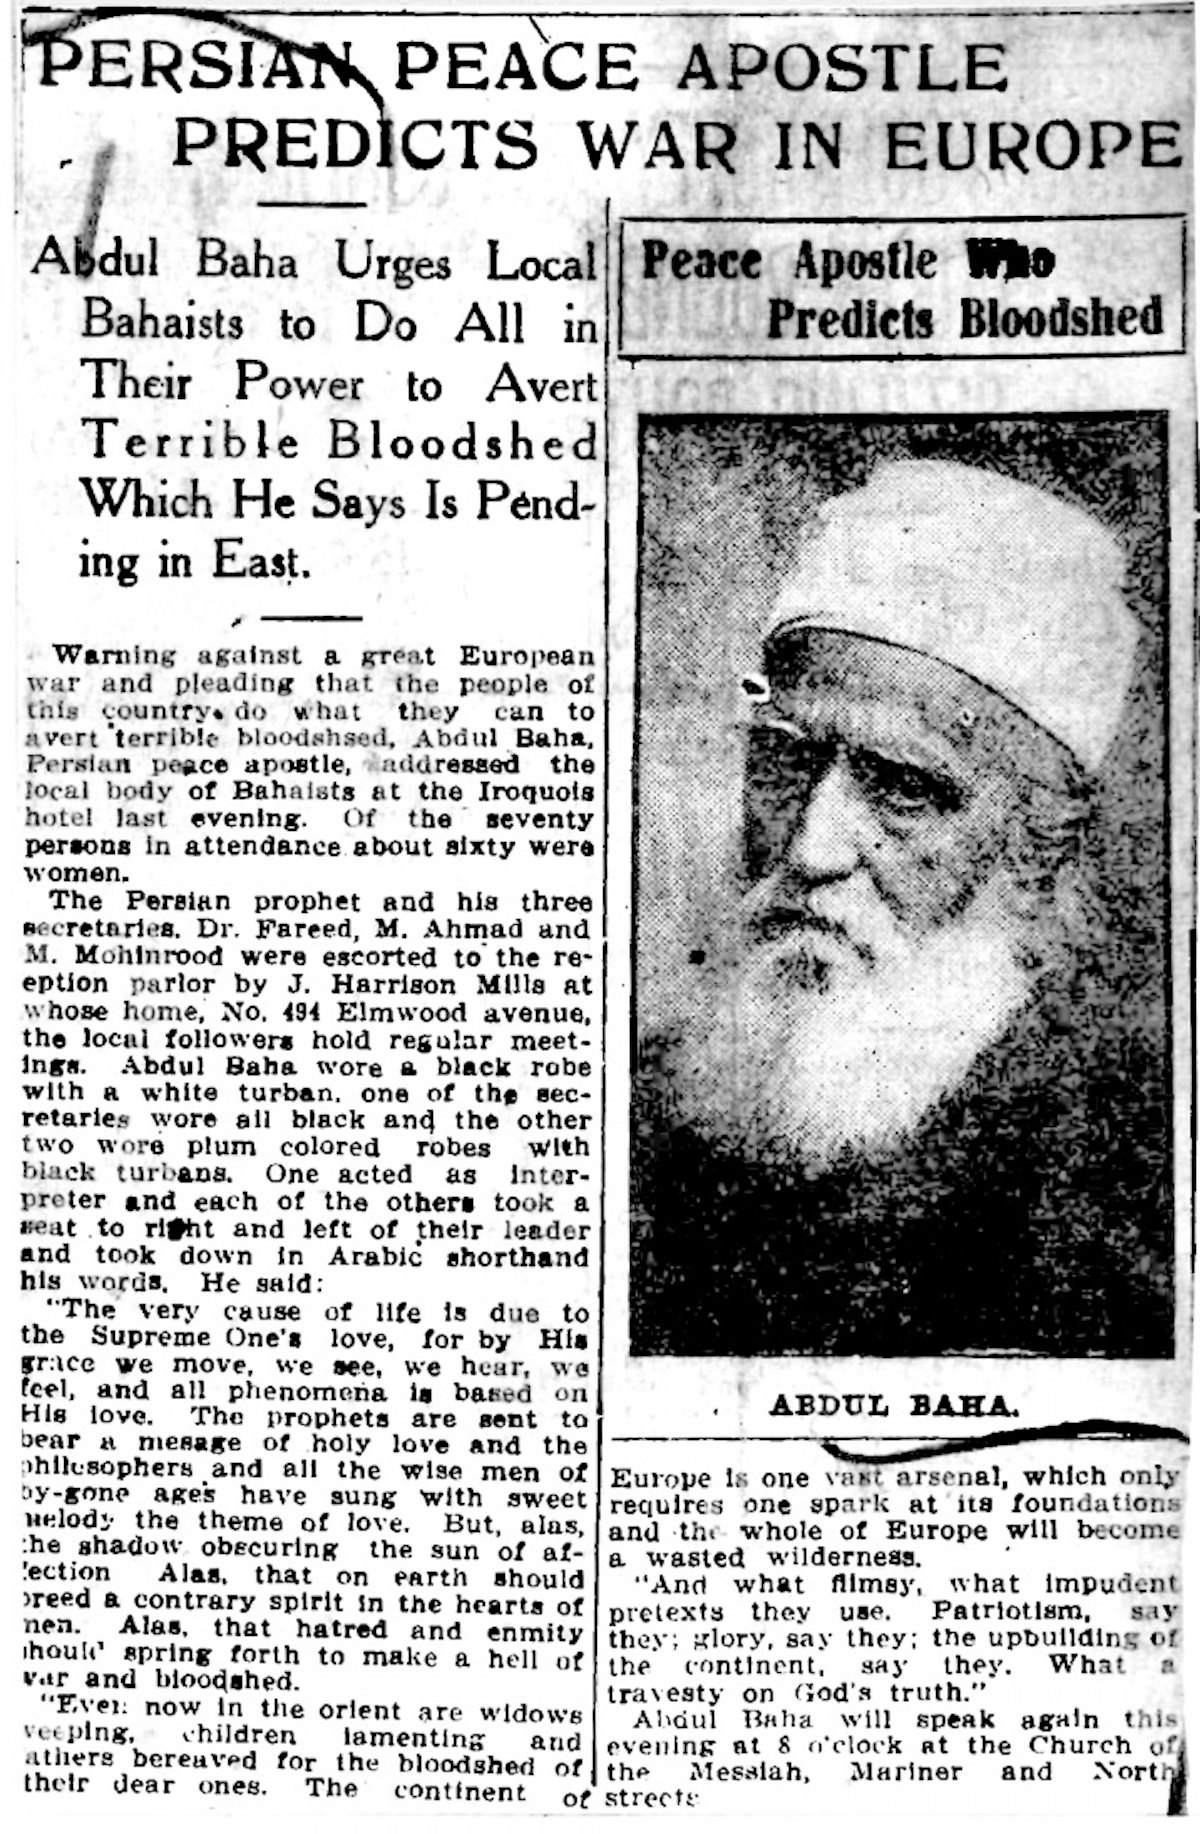 Article du « Buffalo Courier » du 11 septembre 1912 faisant référence à la causerie donnée par ‘Abdu’l-Bahá la nuit précédente dans laquelle il prédit la guerre à venir. Selon le journal, il y disait : « Le continent européen est un vaste arsenal qui n’a besoin que d’une étincelle et toute l’Europe deviendra un lieu dévasté. »